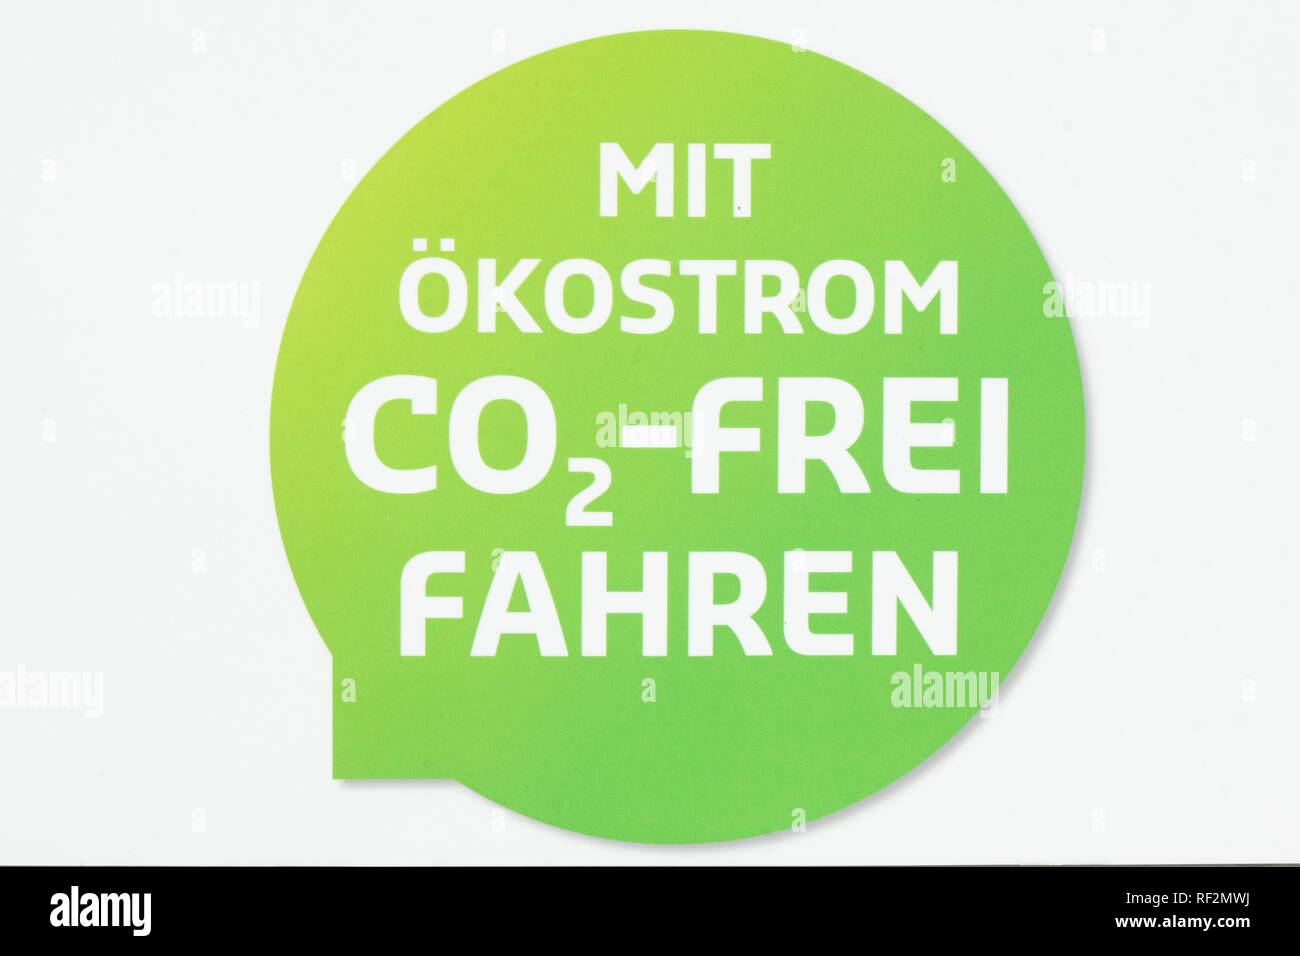 Pictograma con electricidad verde de conducción libre de CO2 en una estación de carga para los coches eléctricos, Alemania Foto de stock